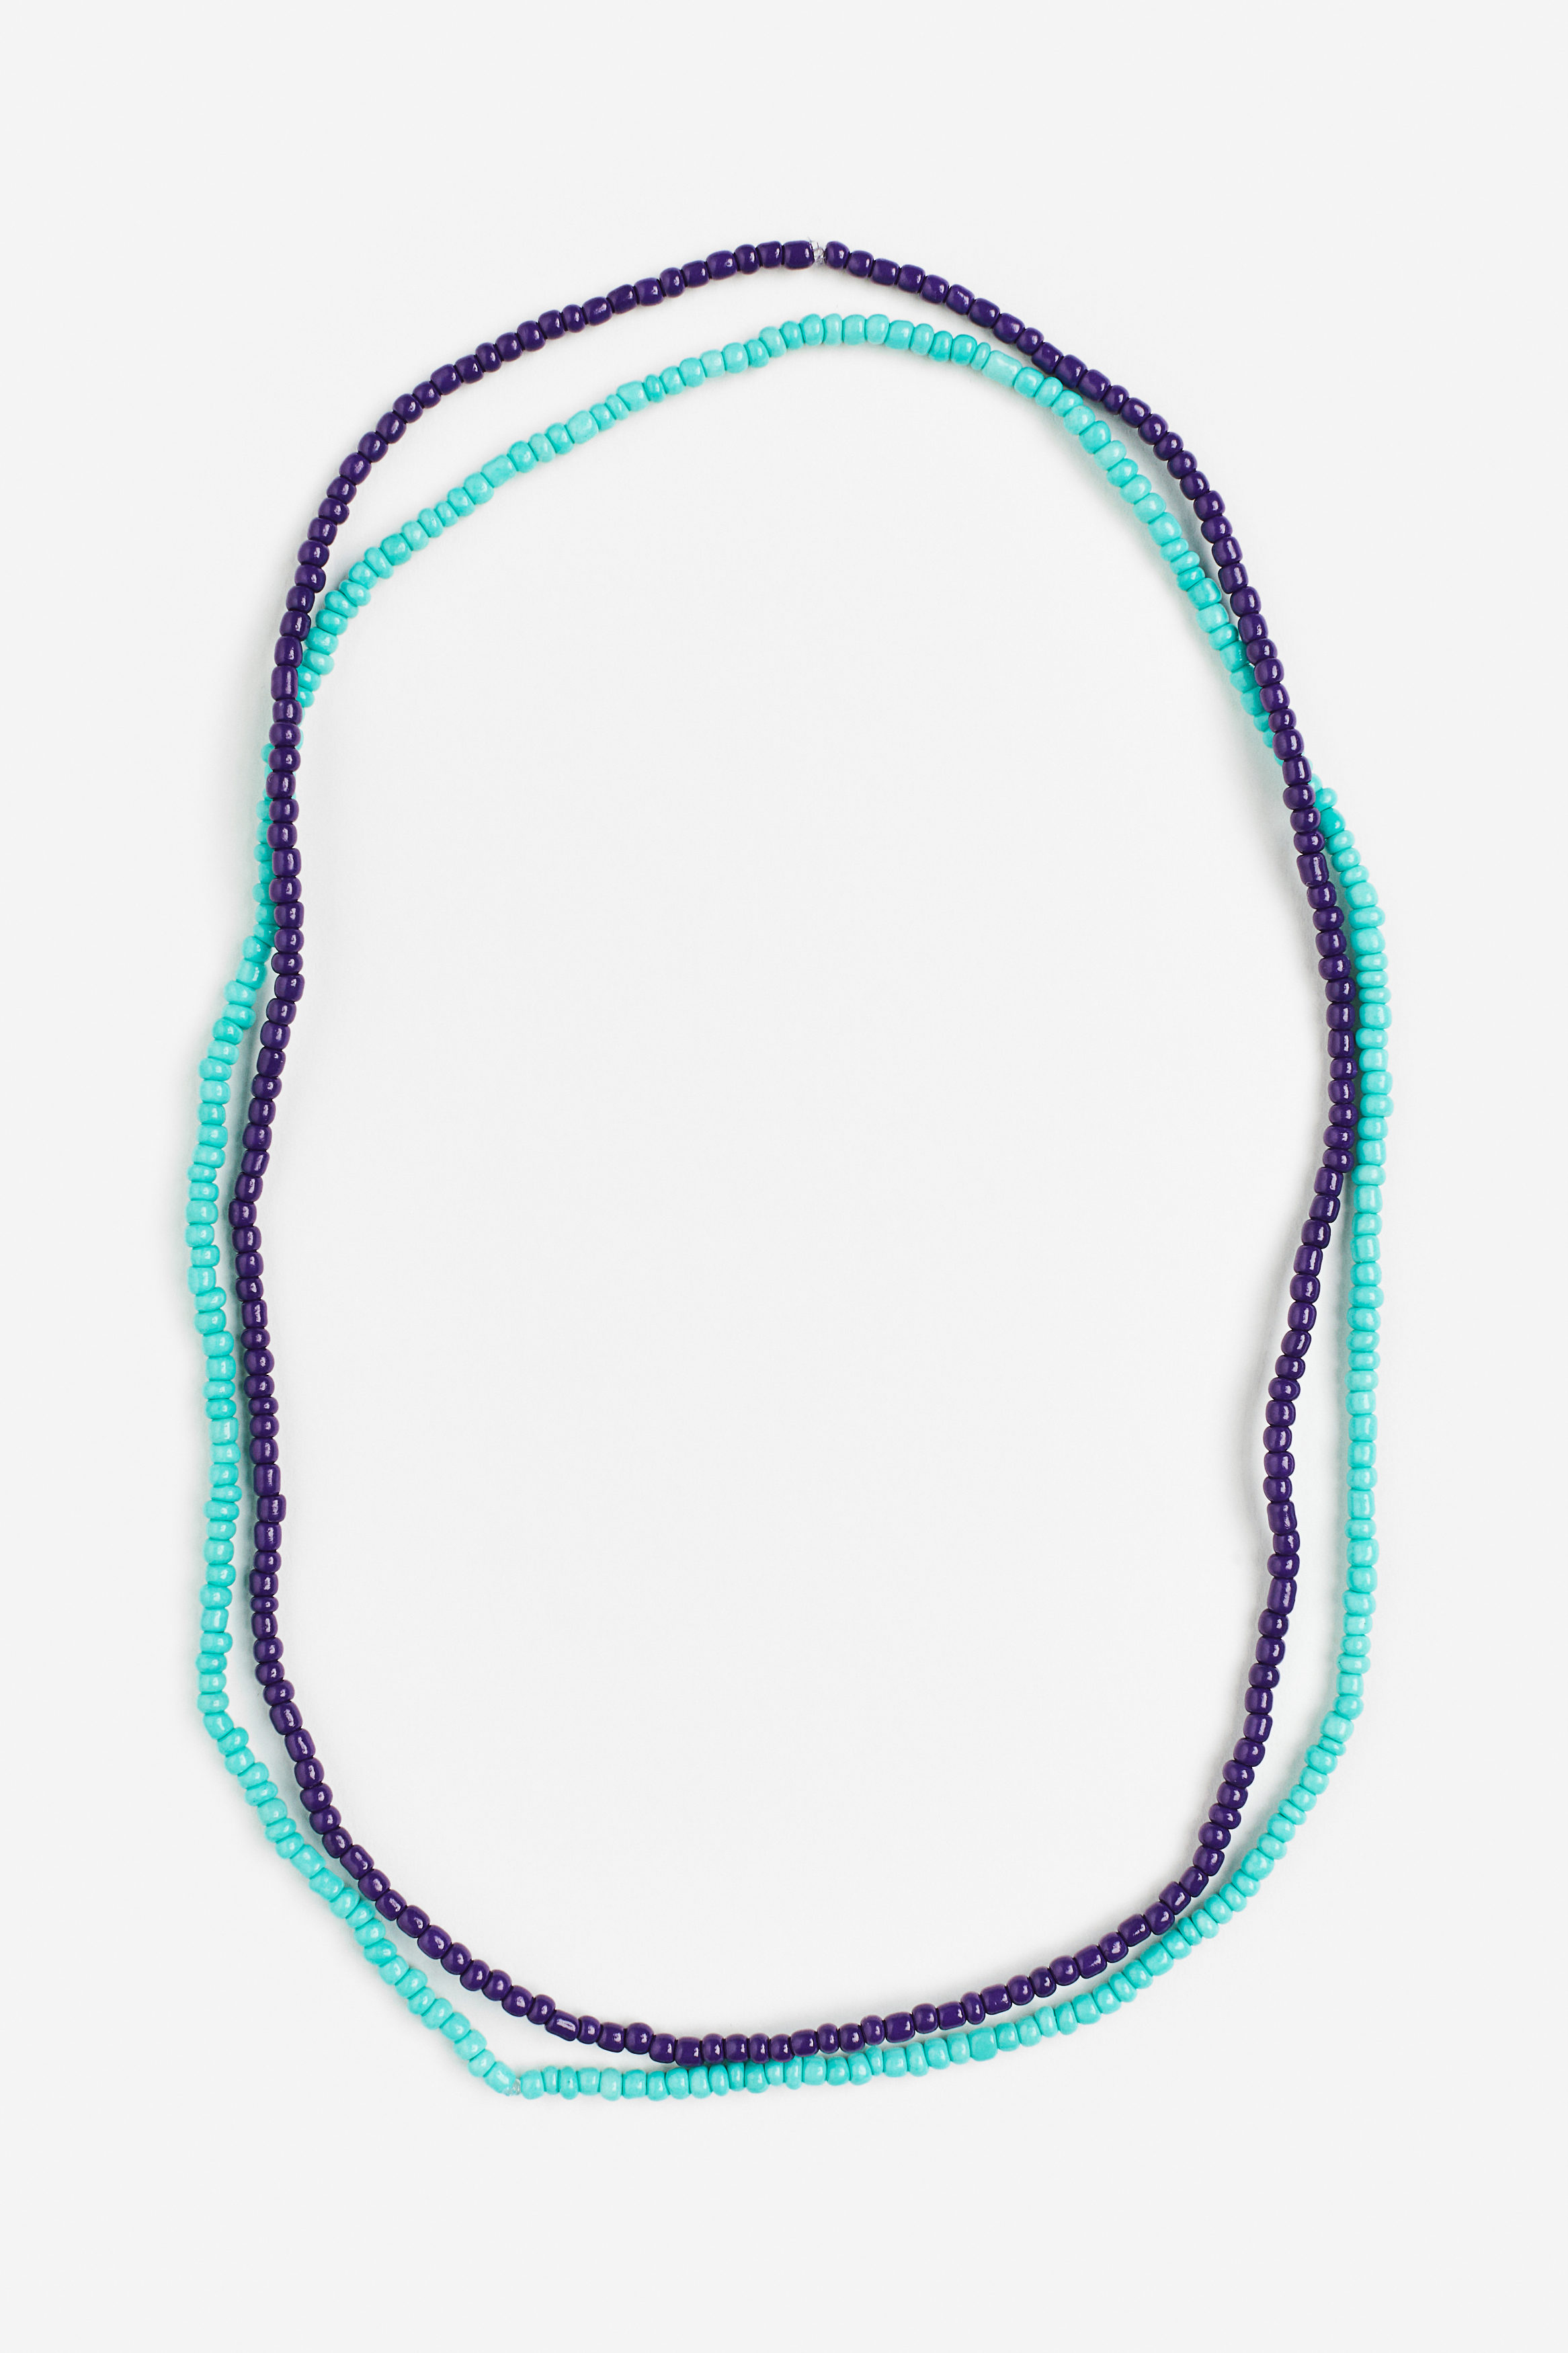 Billede af H&M 2-pak Halskæde Med Perler Turkis/mørklilla, Halskæder. Farve: Turquoise/dark purple I størrelse Onesize